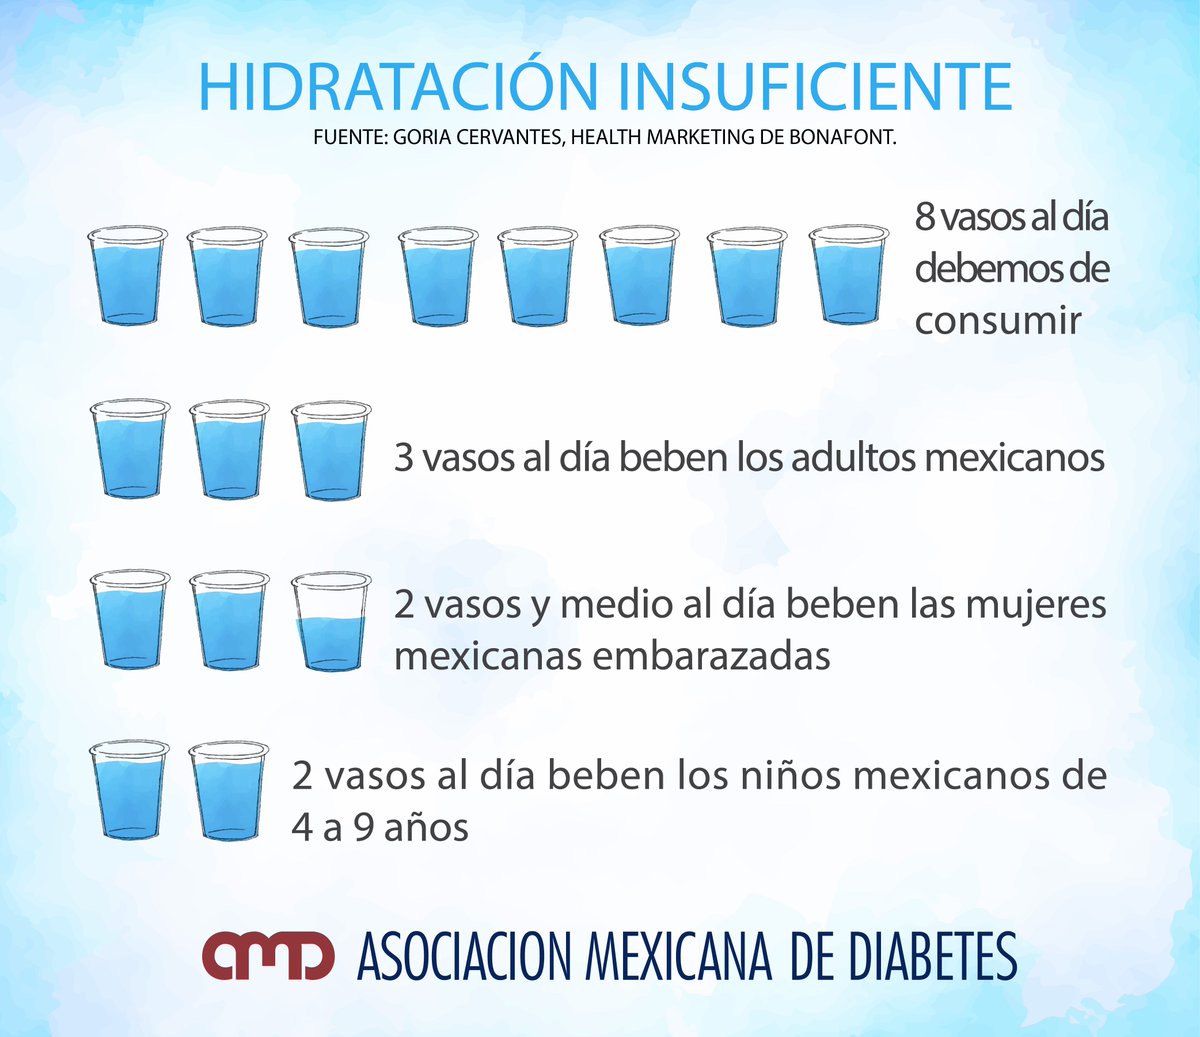 Asoc Mex Diabetes on Twitter: "Al día de consumir de 6 a 8 vasos de agua natural al día, sin embargo esto no sucede :( Y tú, ¿cuantos vasos al día